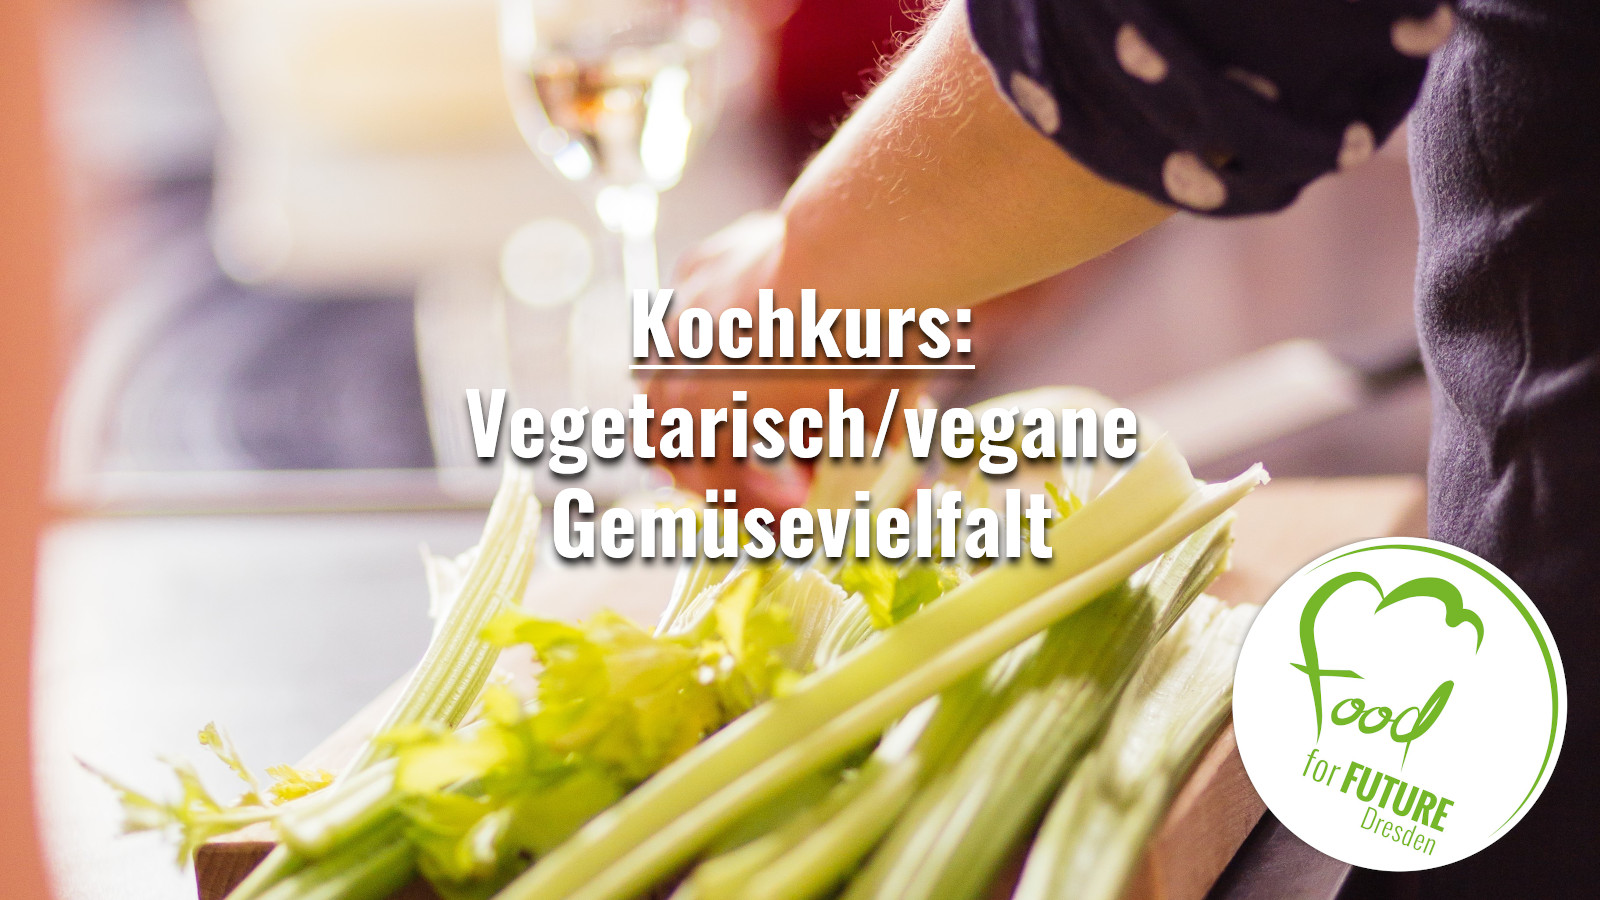 Hände, die Sellerie schneiden und im Hintergrund ein Glas Weißwein. Bildaufschrift: Vegetarisch/vegane Gemüsevielfalt